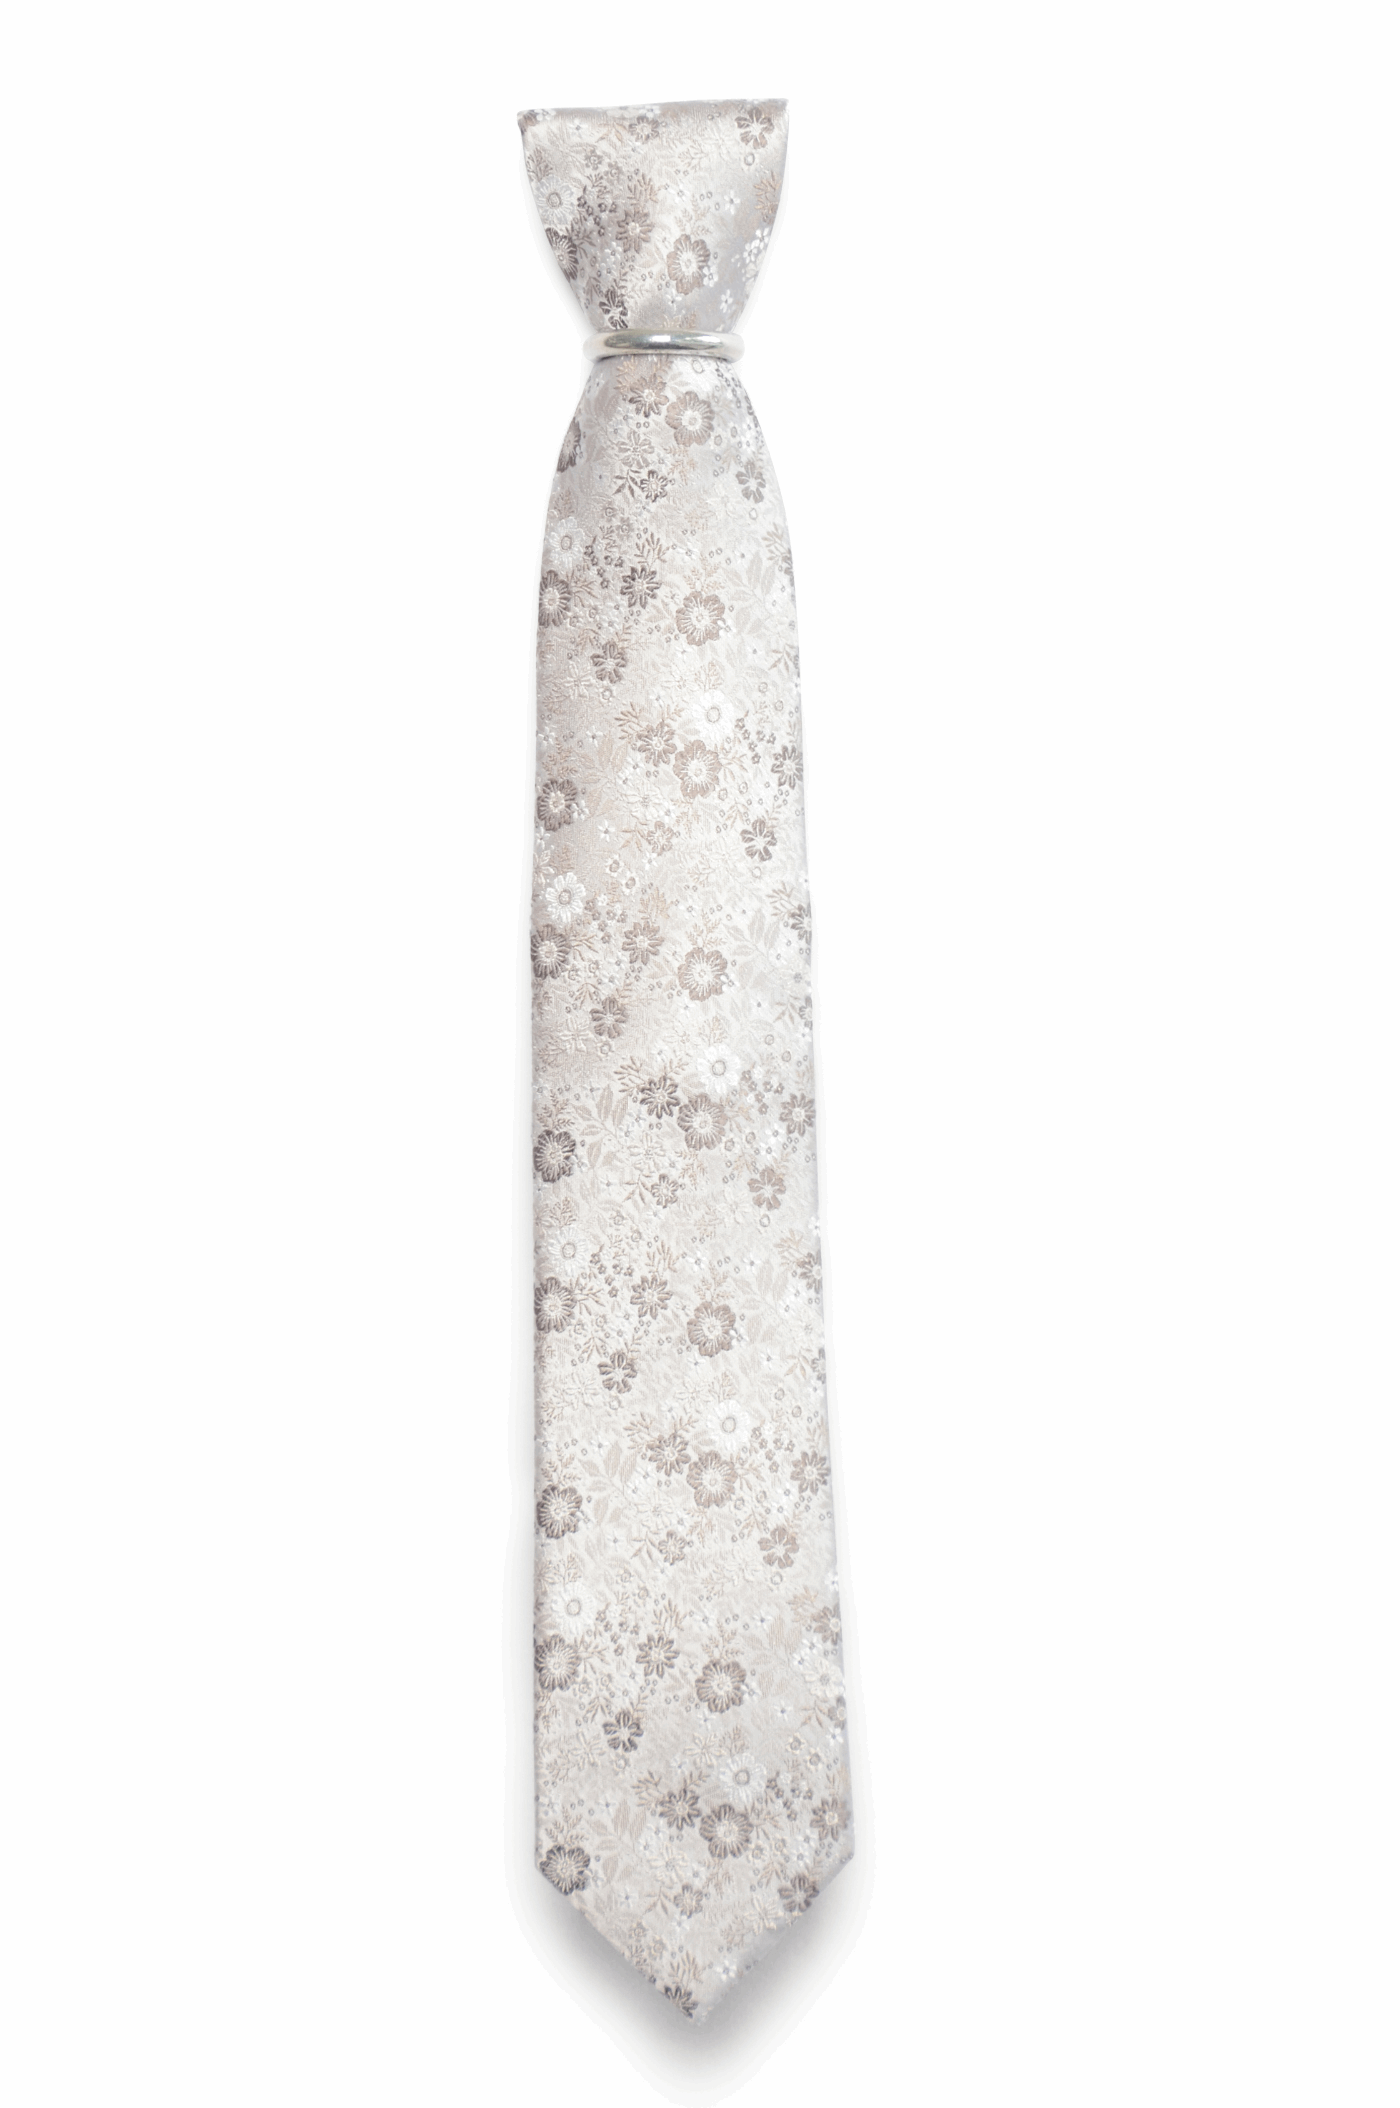 Hochzeit-Set Krawatte und Einstecktuch glänzend geblümt beige